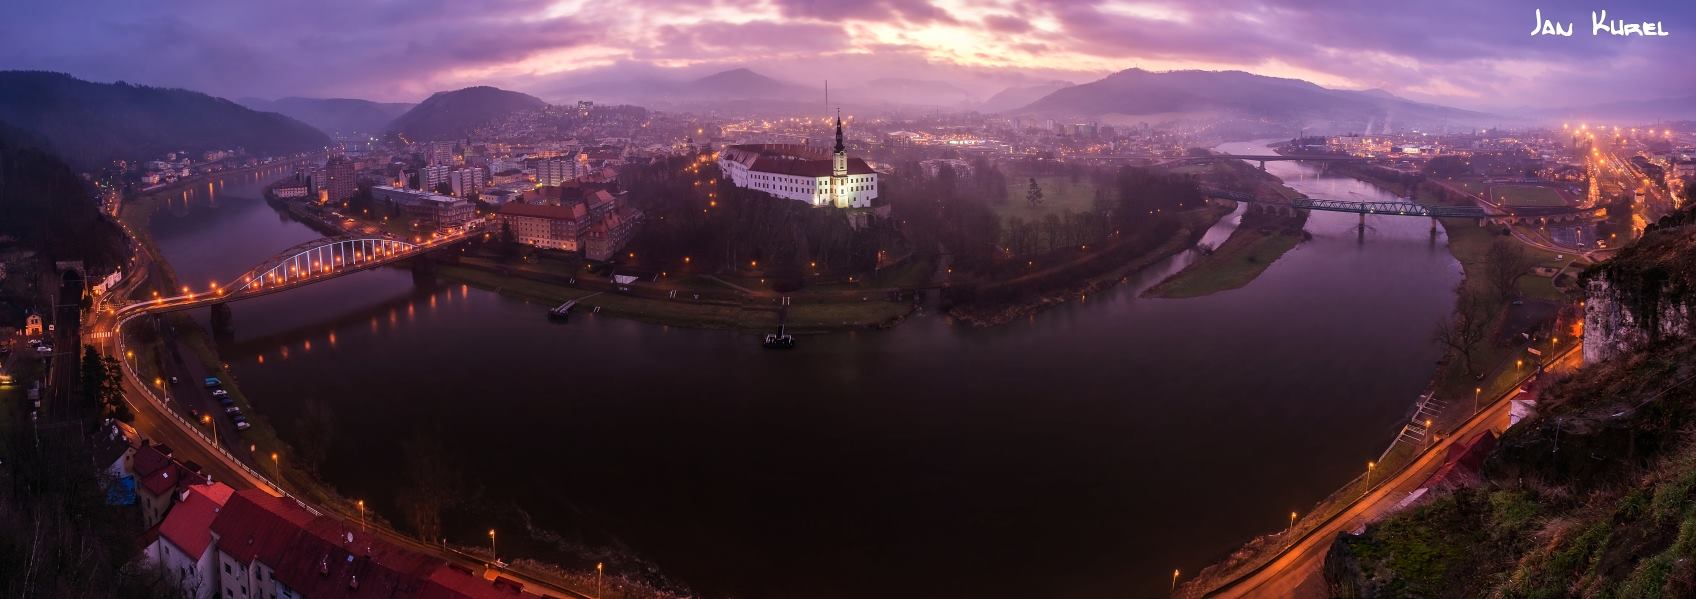 Panoramatický pohled na město Děčín se zámkem a řekou